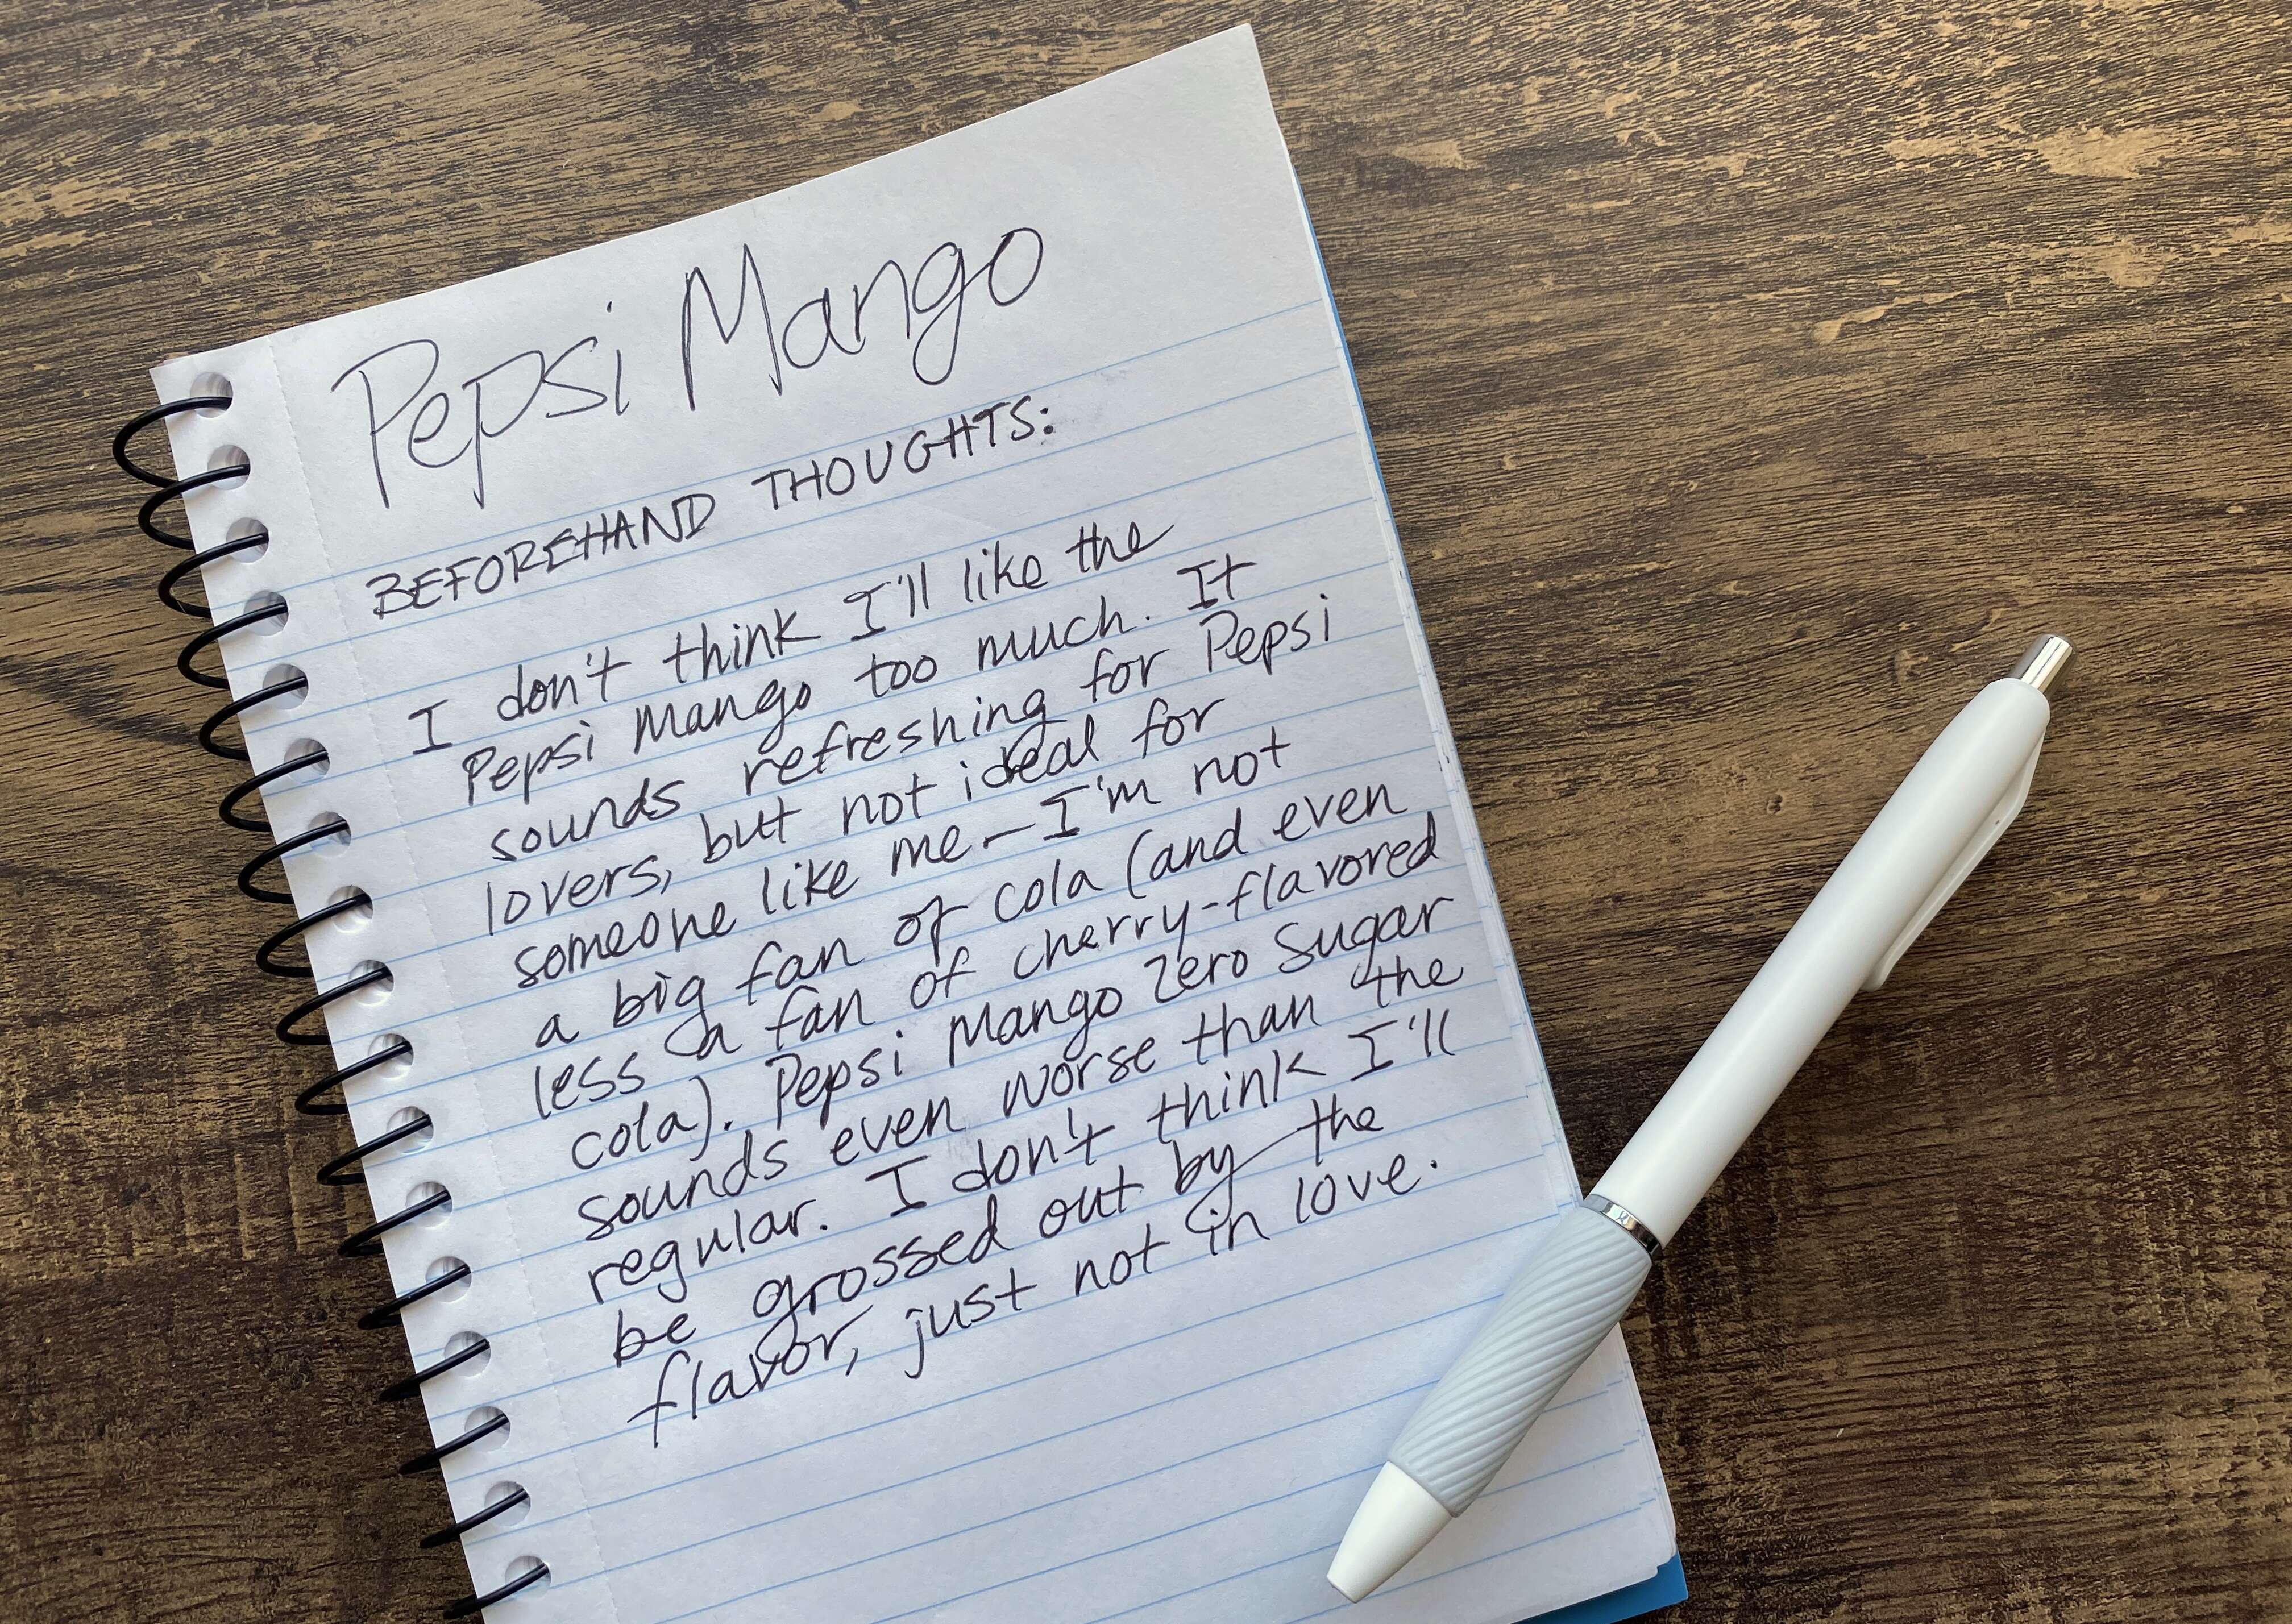 Pepsi Mango taste test notes